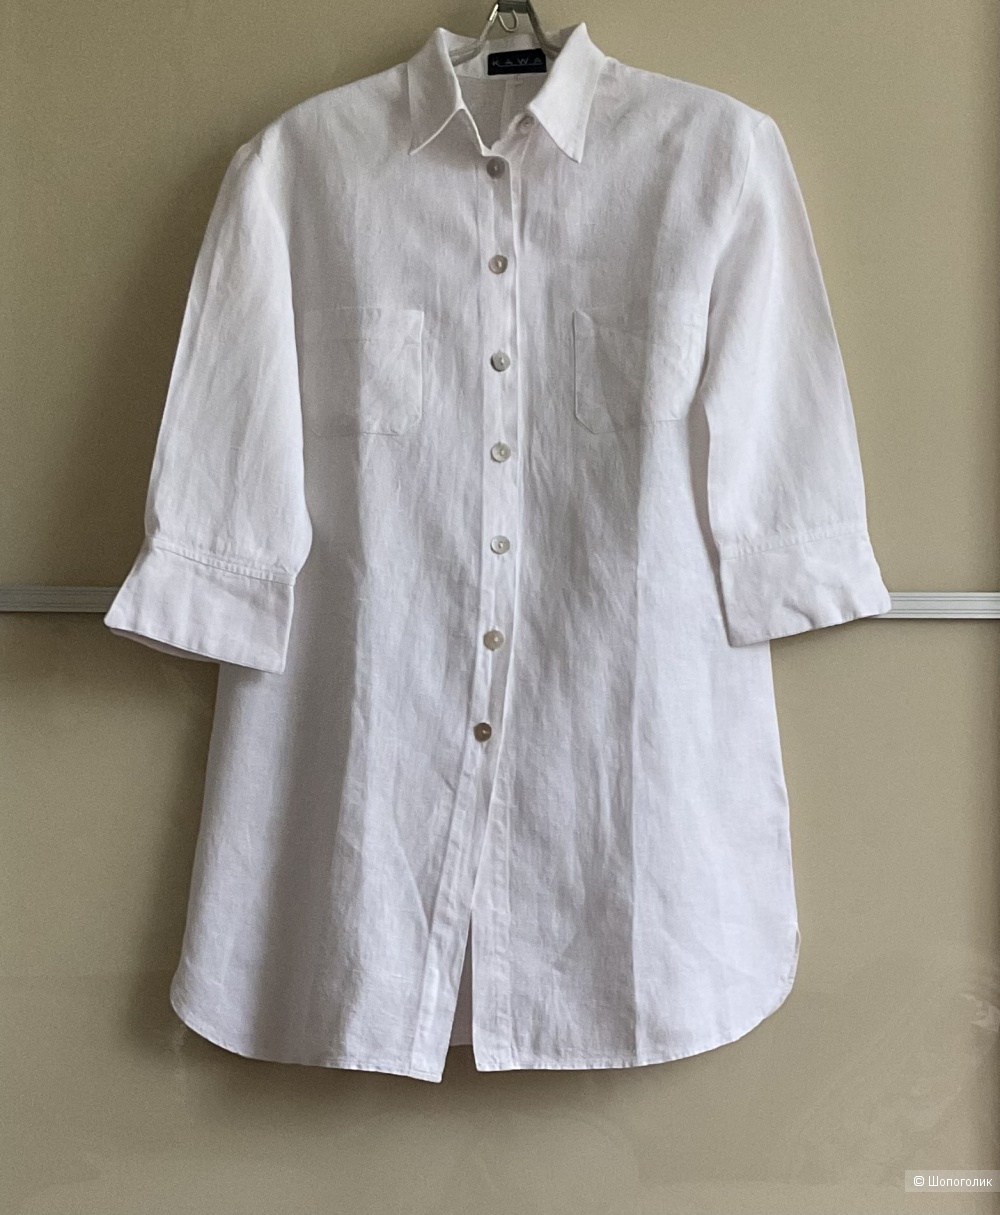 Рубашка Kawa,40D(44-46)